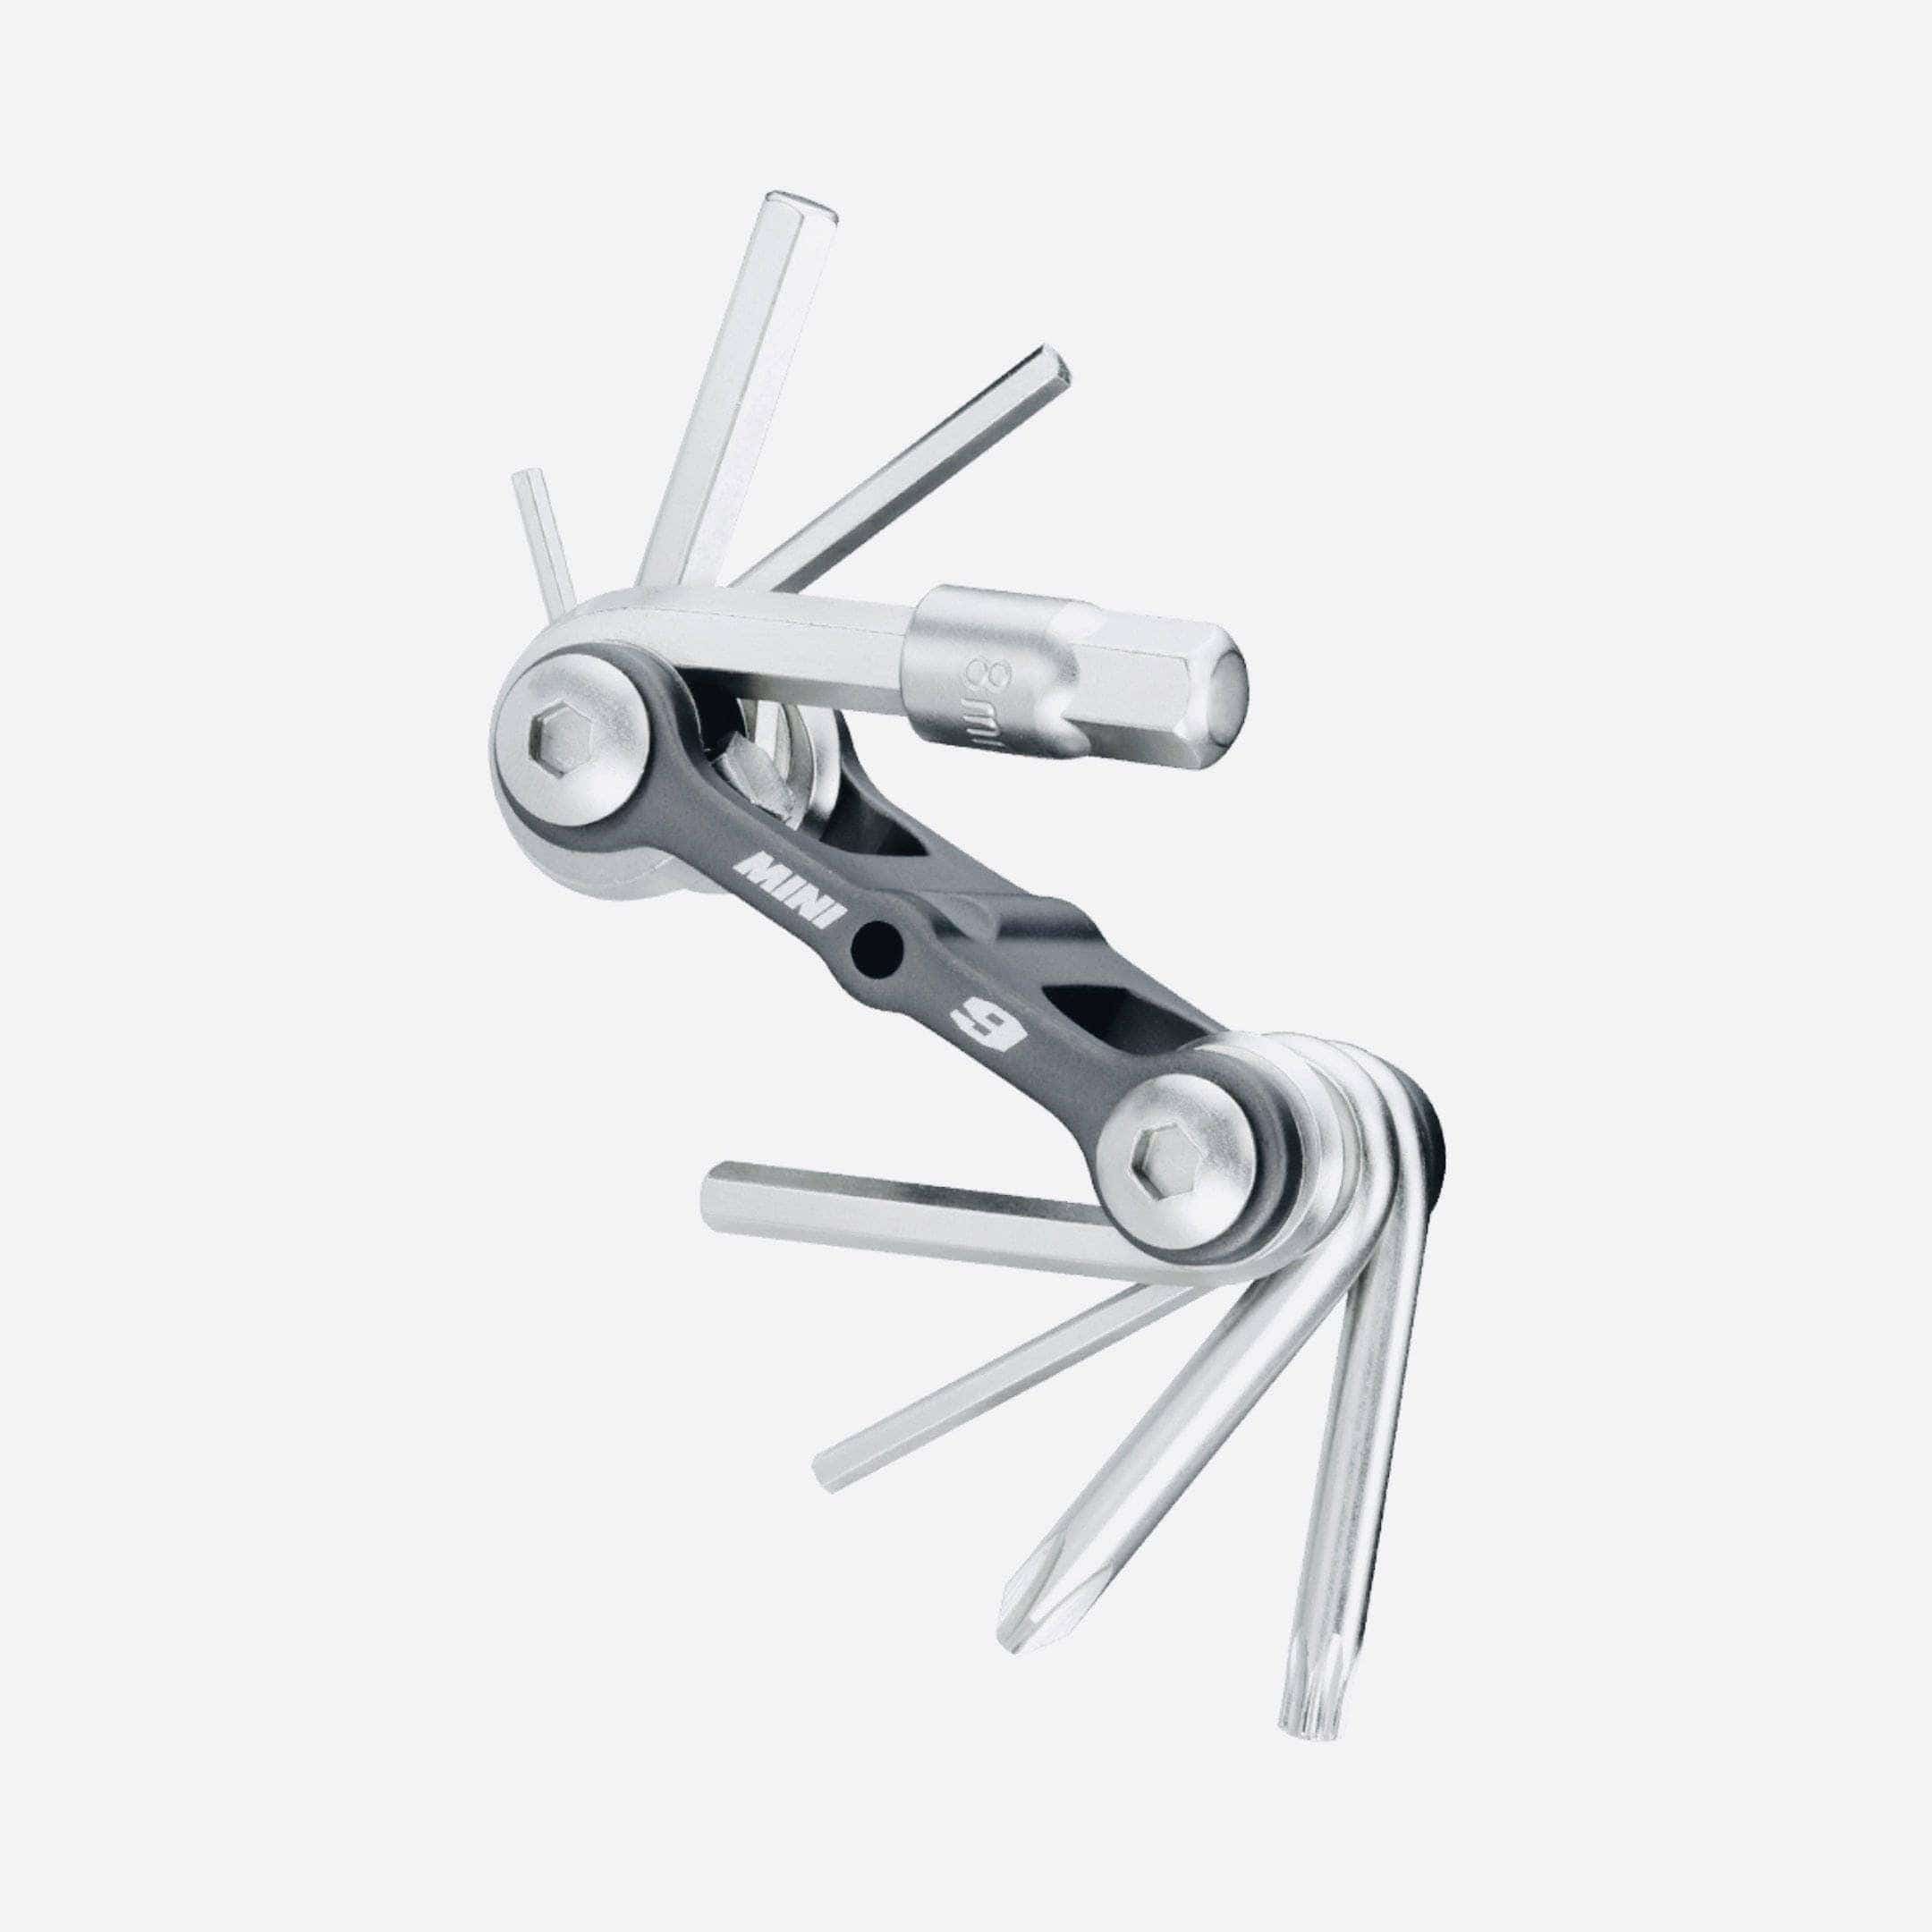 Topeak Mini 9 Folding Multi-Tool Accessories - Tools - Multi-Tools